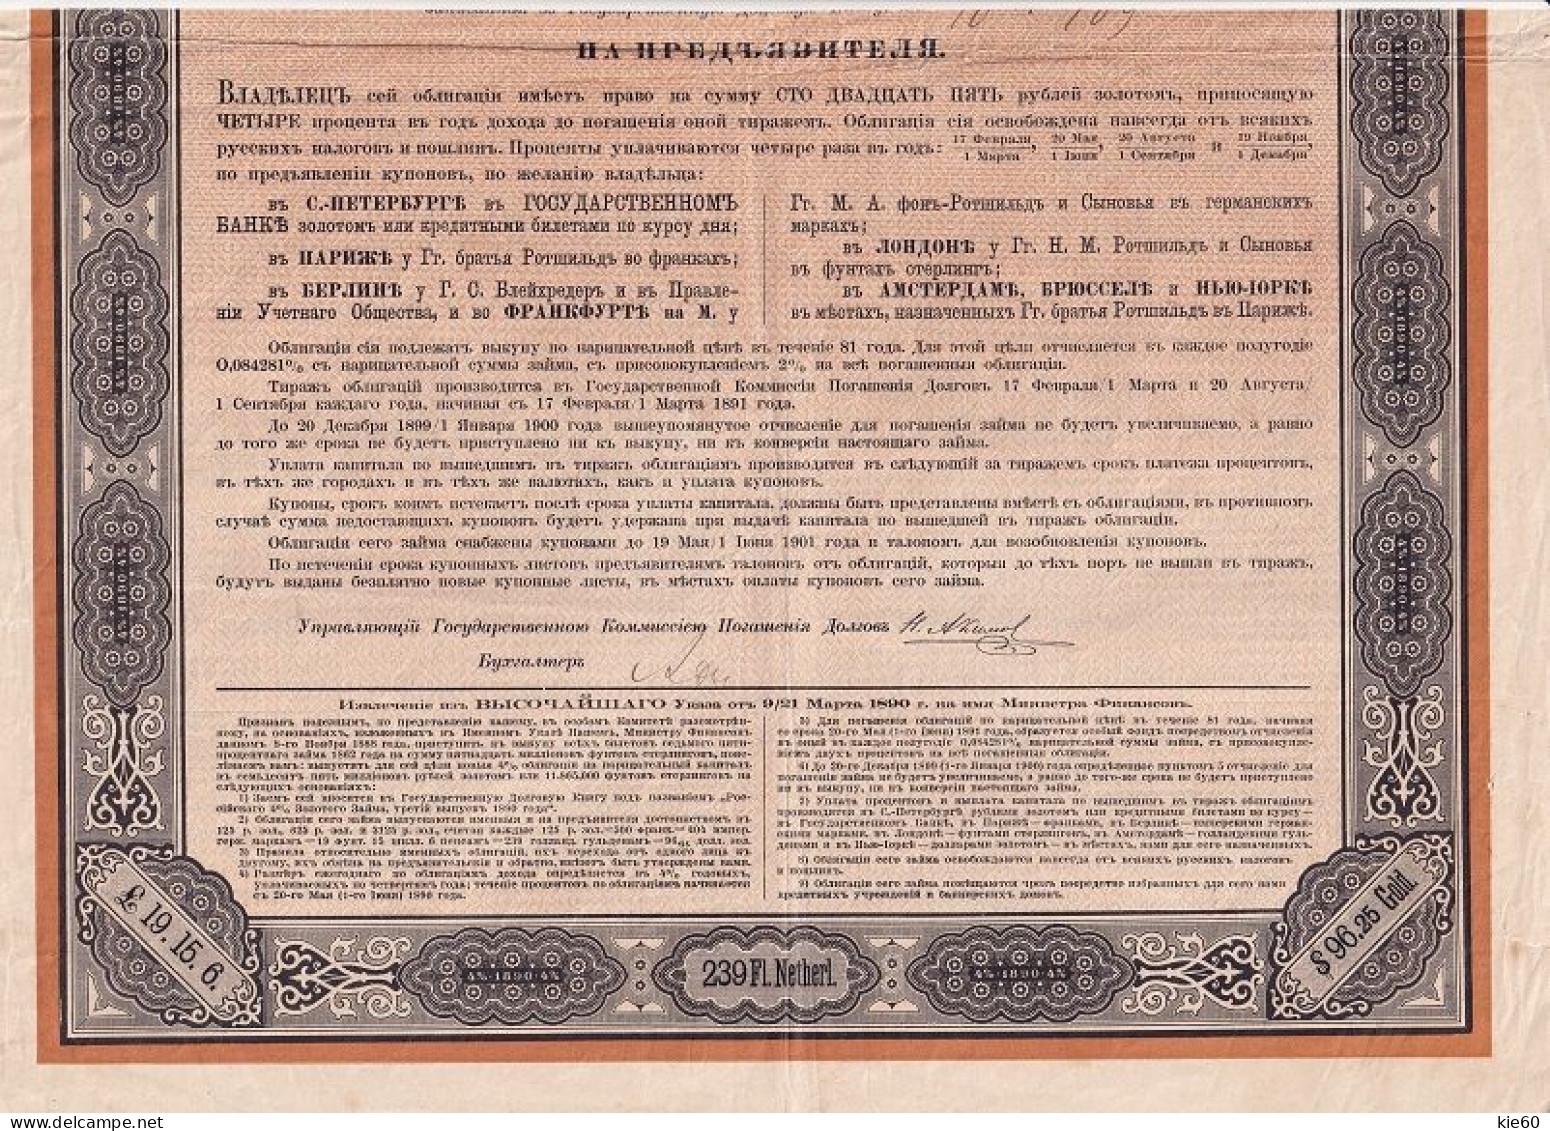 Russia  - 1890 -  125 Rubles  - 4%  Gold Bond - Russia